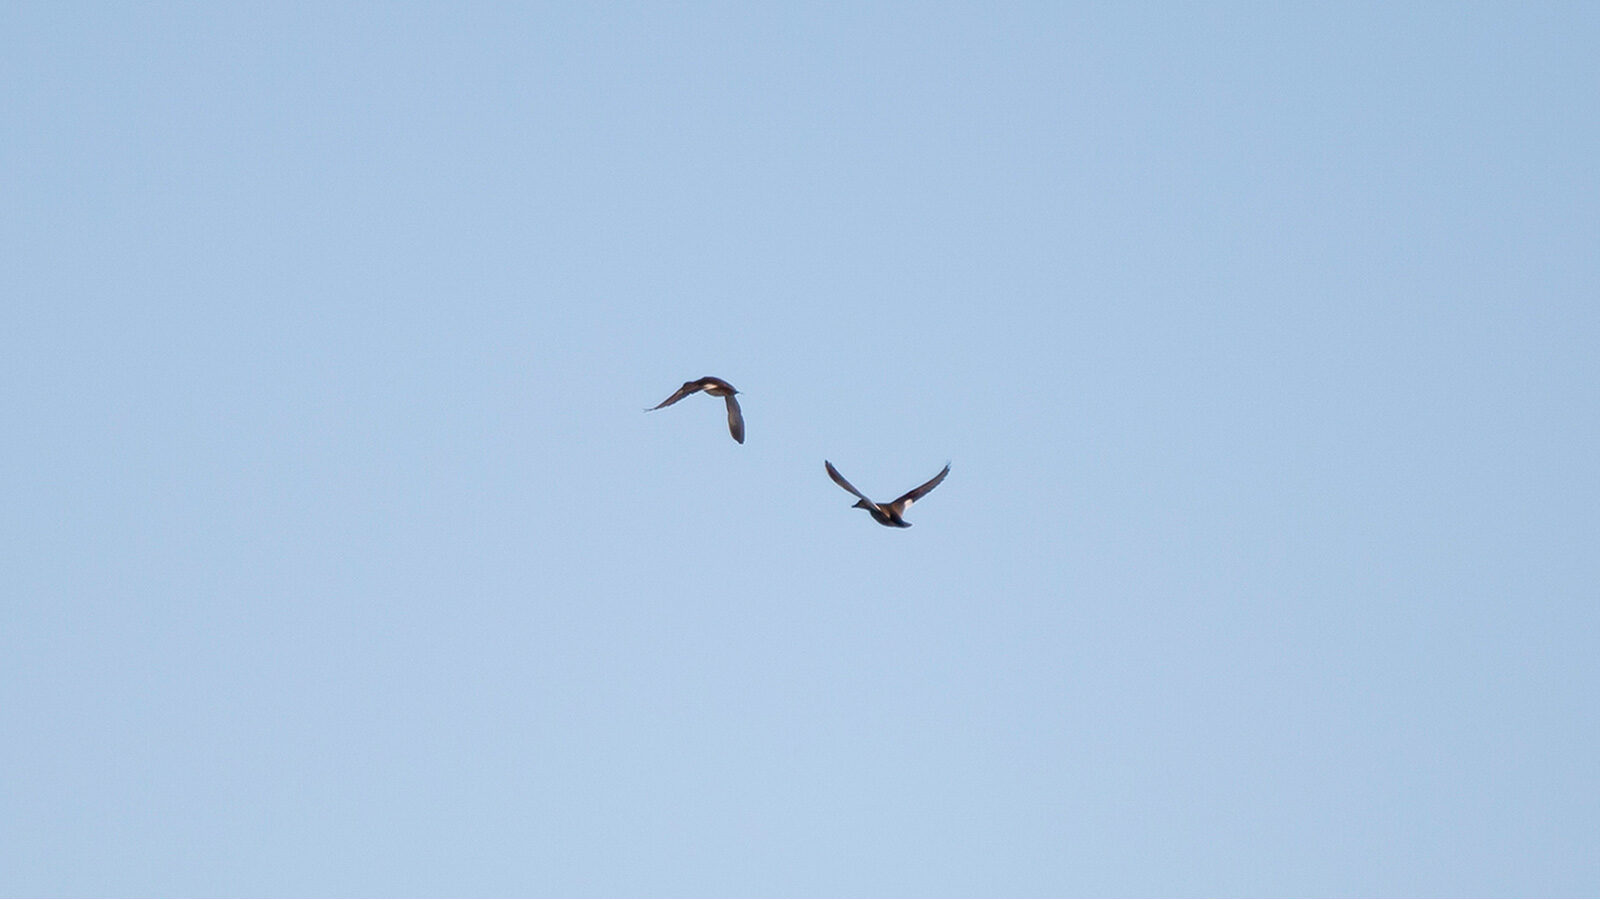 Gadwall ducks flying in the sky